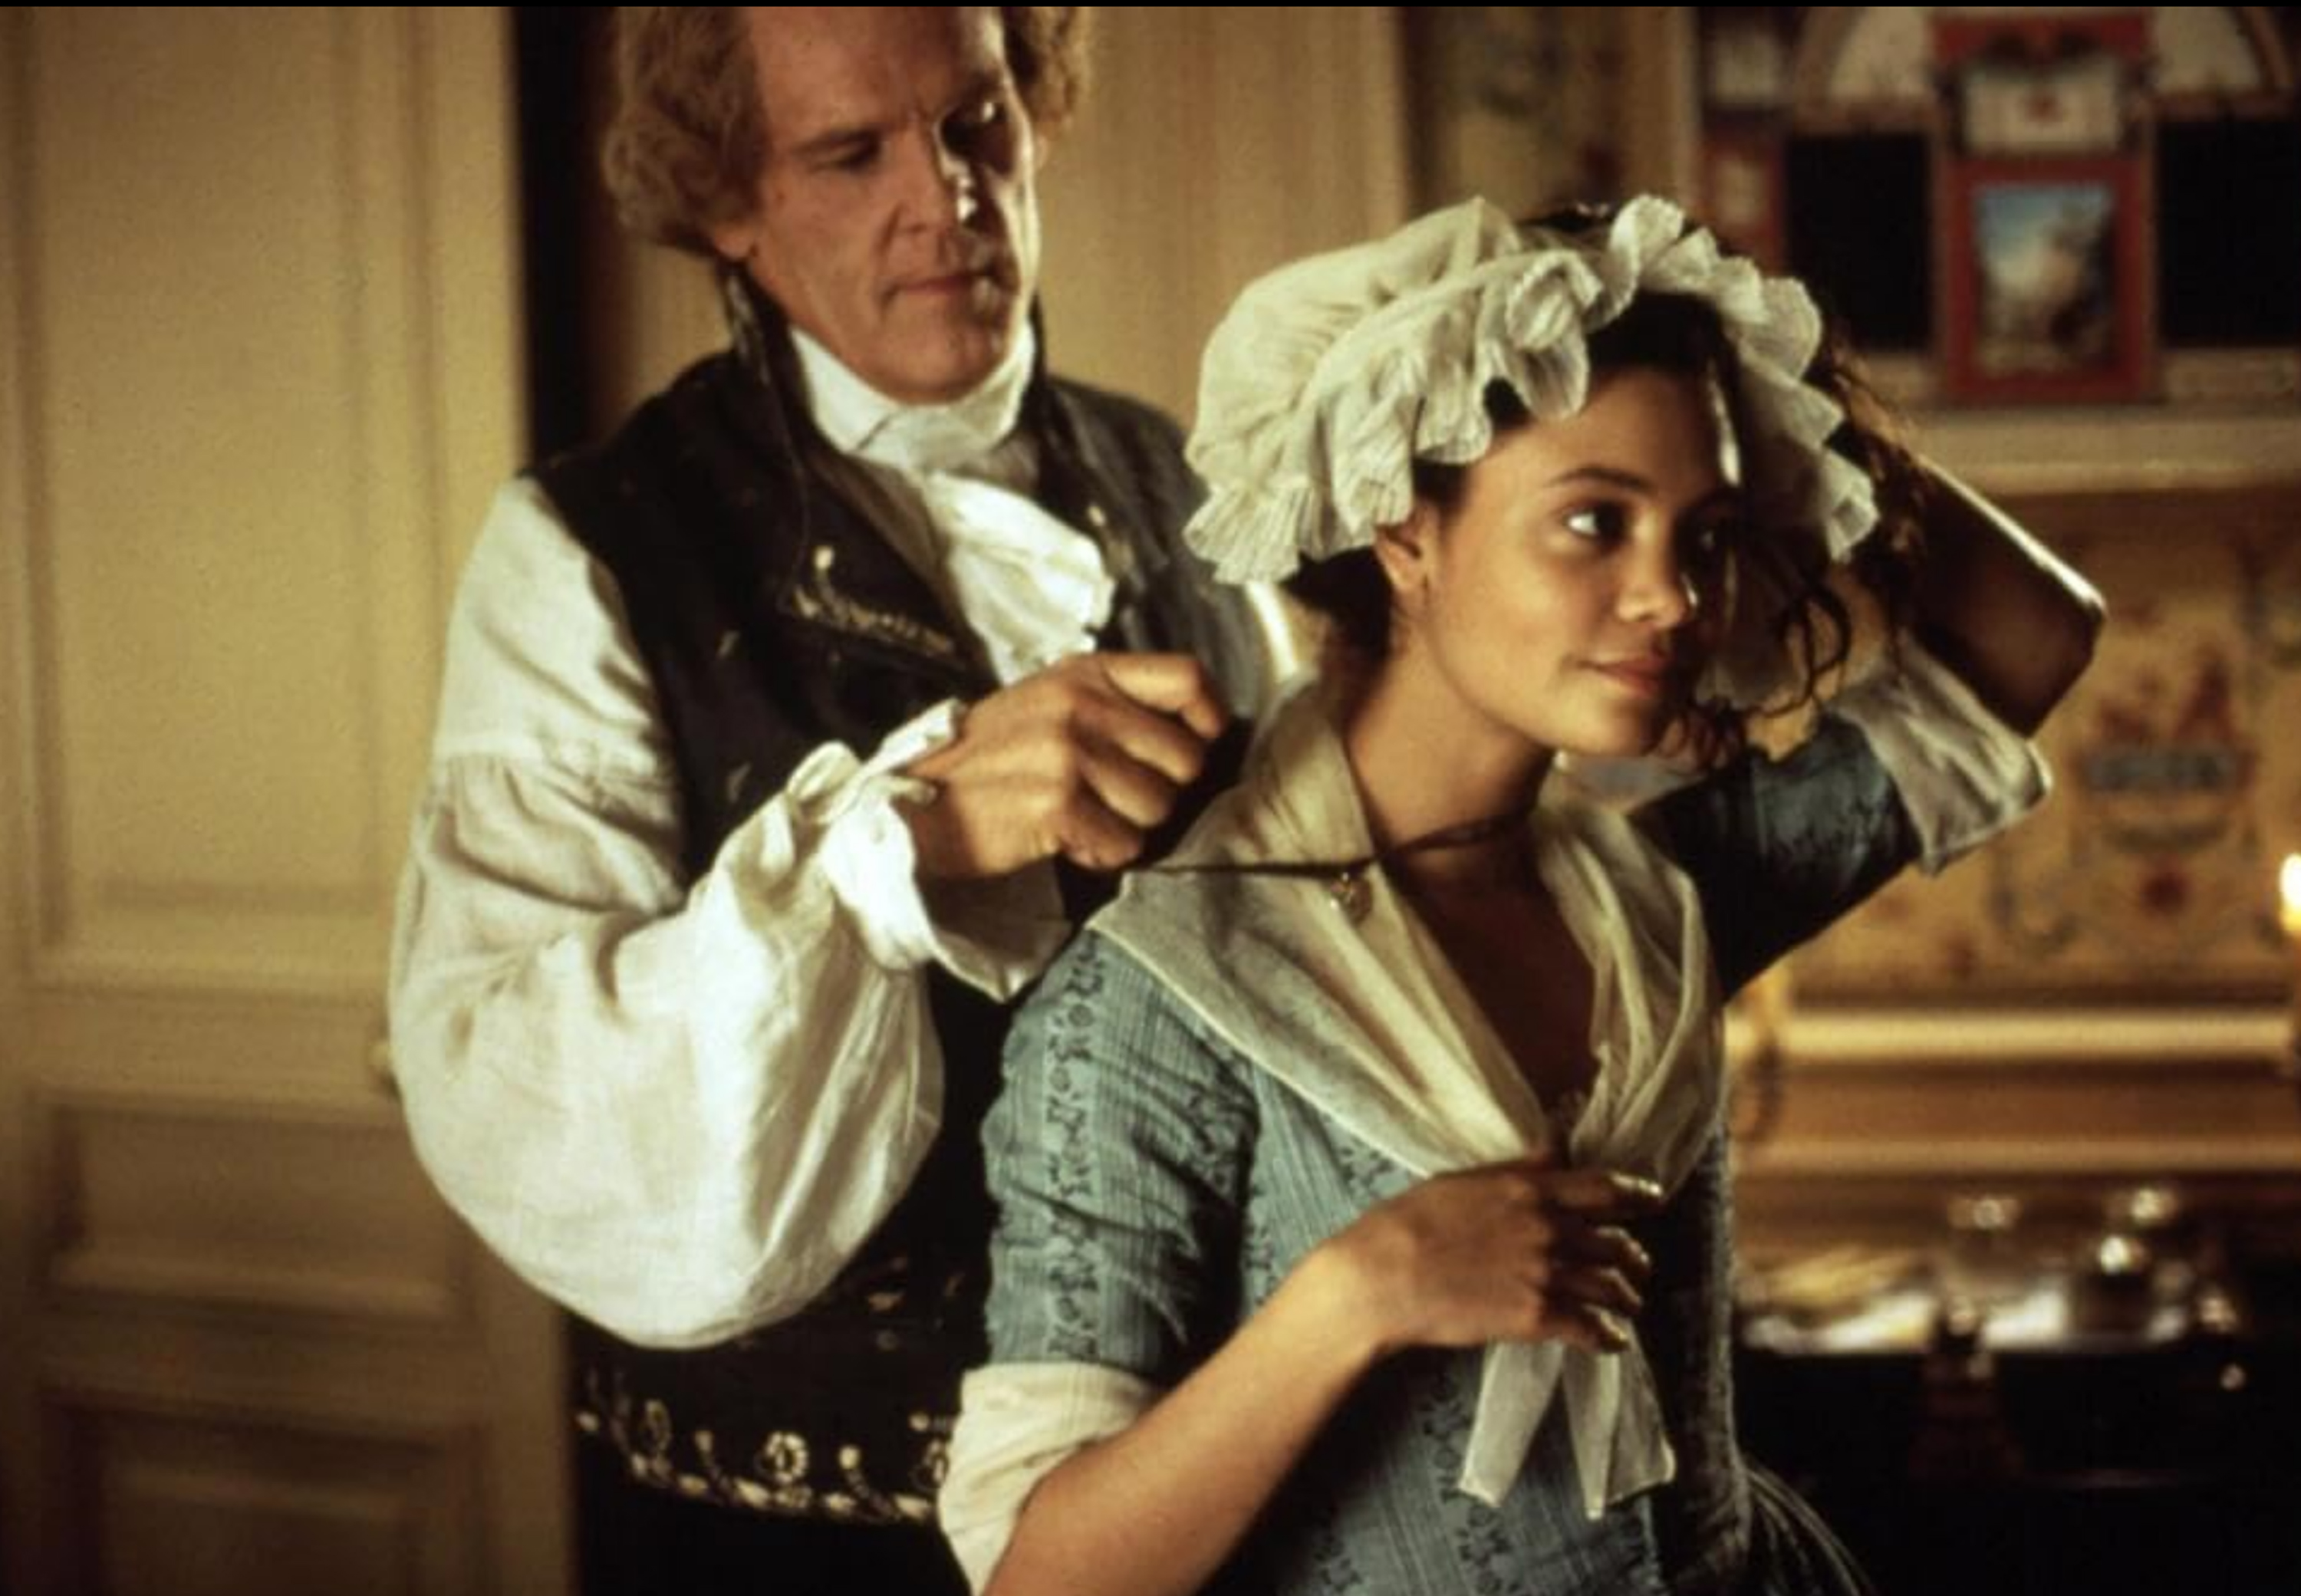 Nick Nolte and Thandiwe Newton in "Jefferson in Paris" (1995)